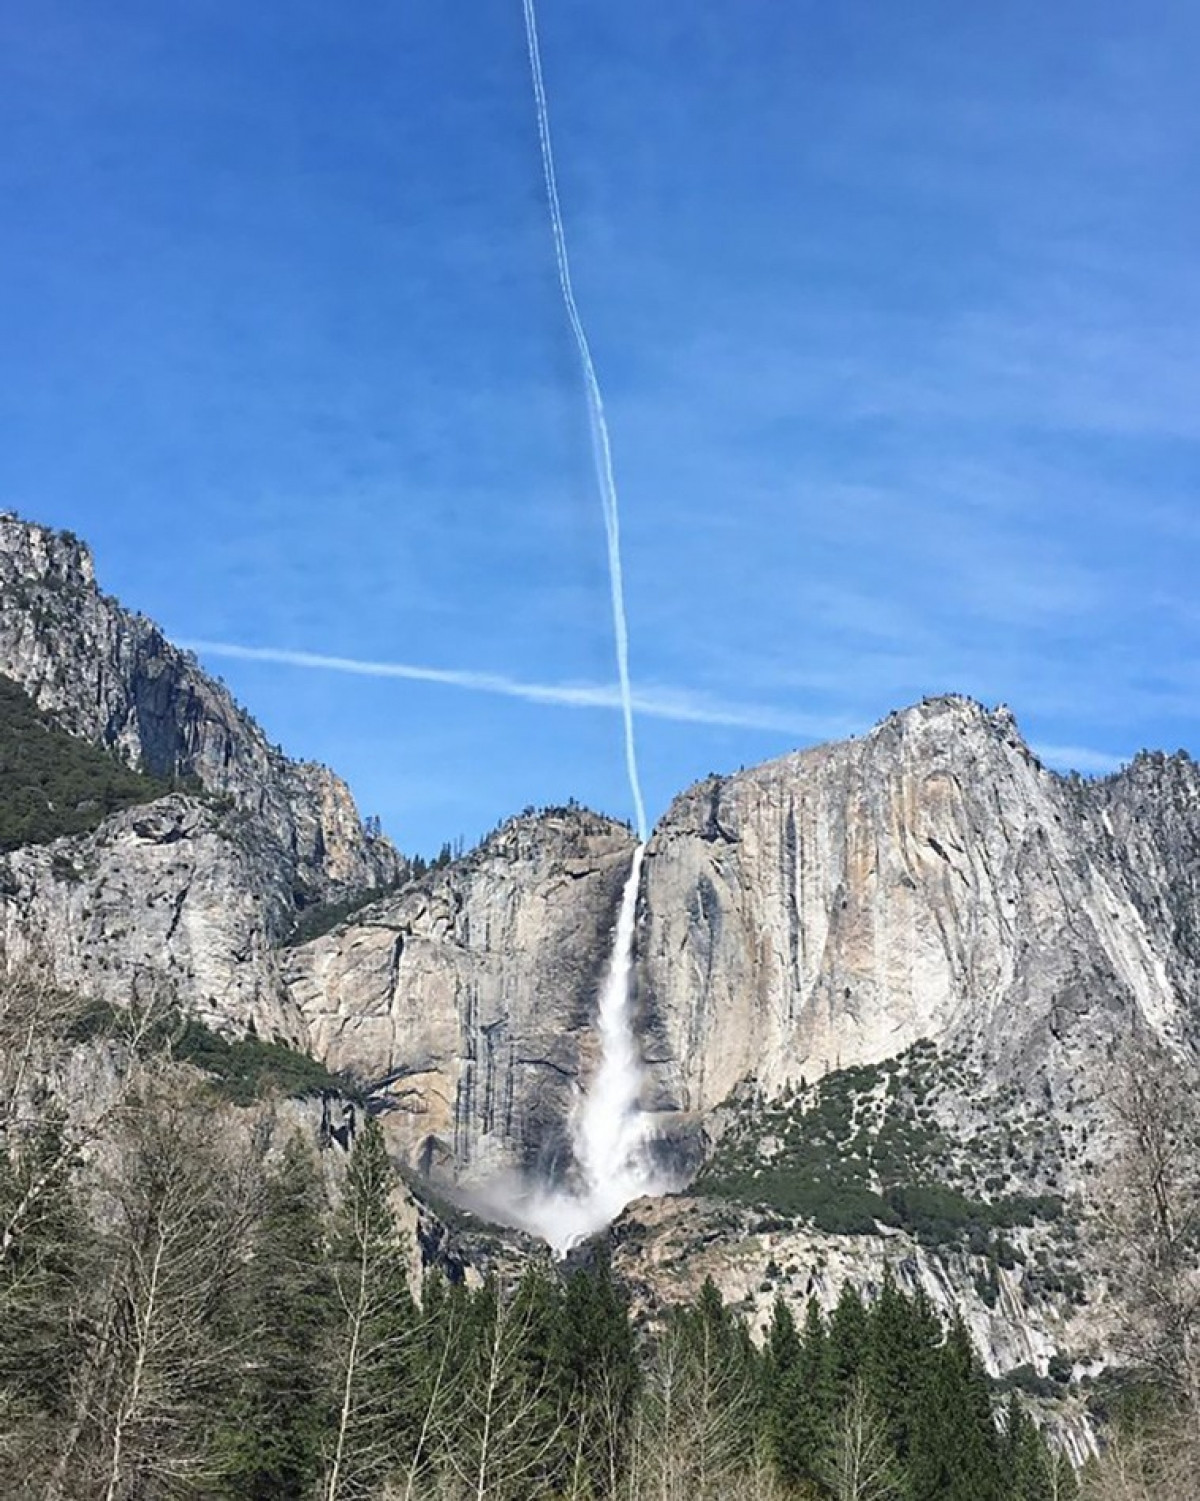 Vệt mây trên bầu trời tình cờ nối liền với thác nước Yosemite khiến nó trông như thể một dòng thác chảy xuống từ trời cao.